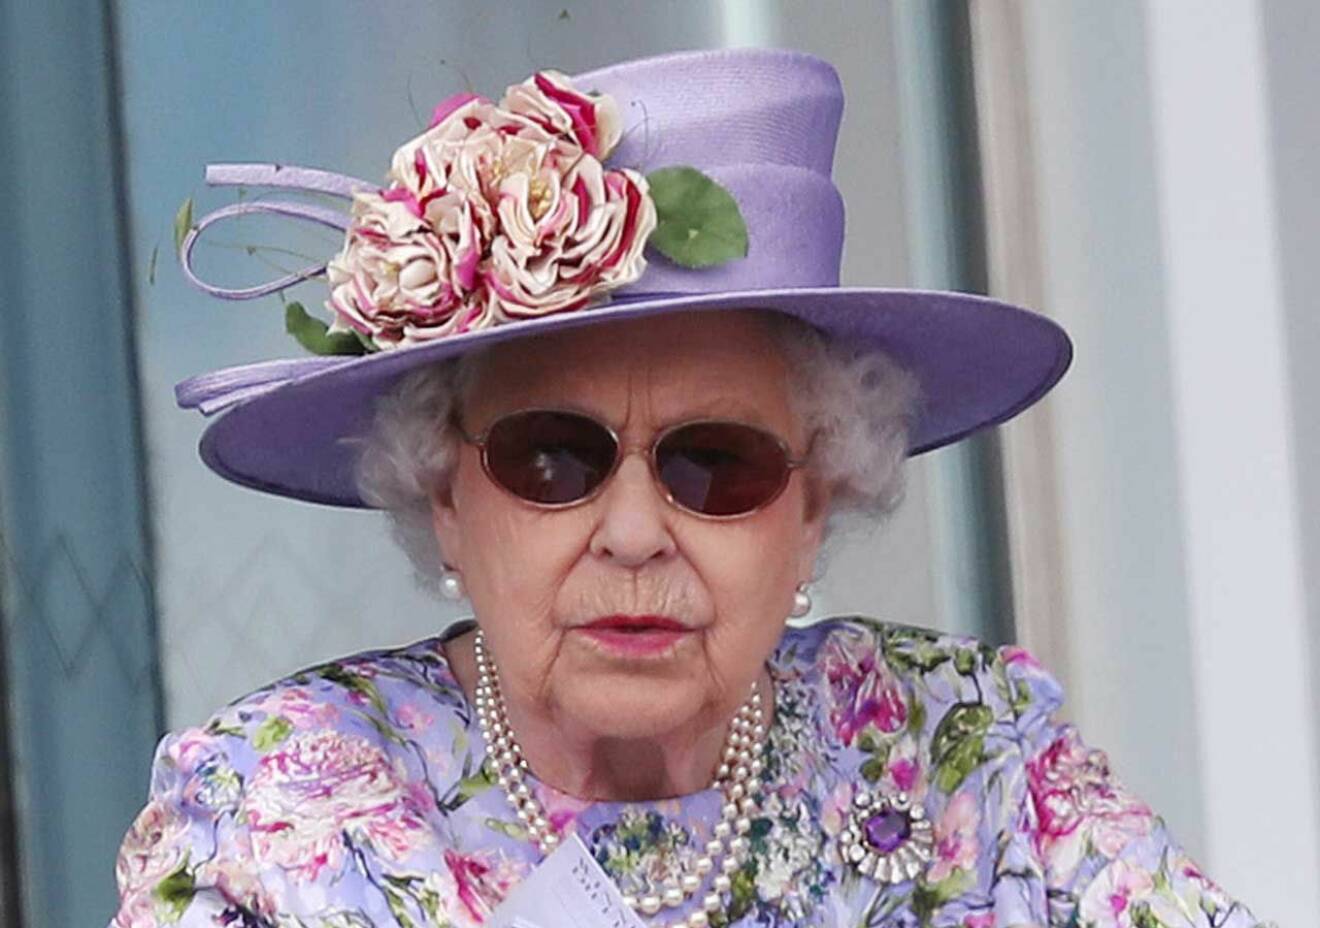 Drottning Elizabeth har också drabbats av grå starr. Hon opererade ena ögat i våras, och blev sedan ljuskänslig och fick ha solglasögon en tid.